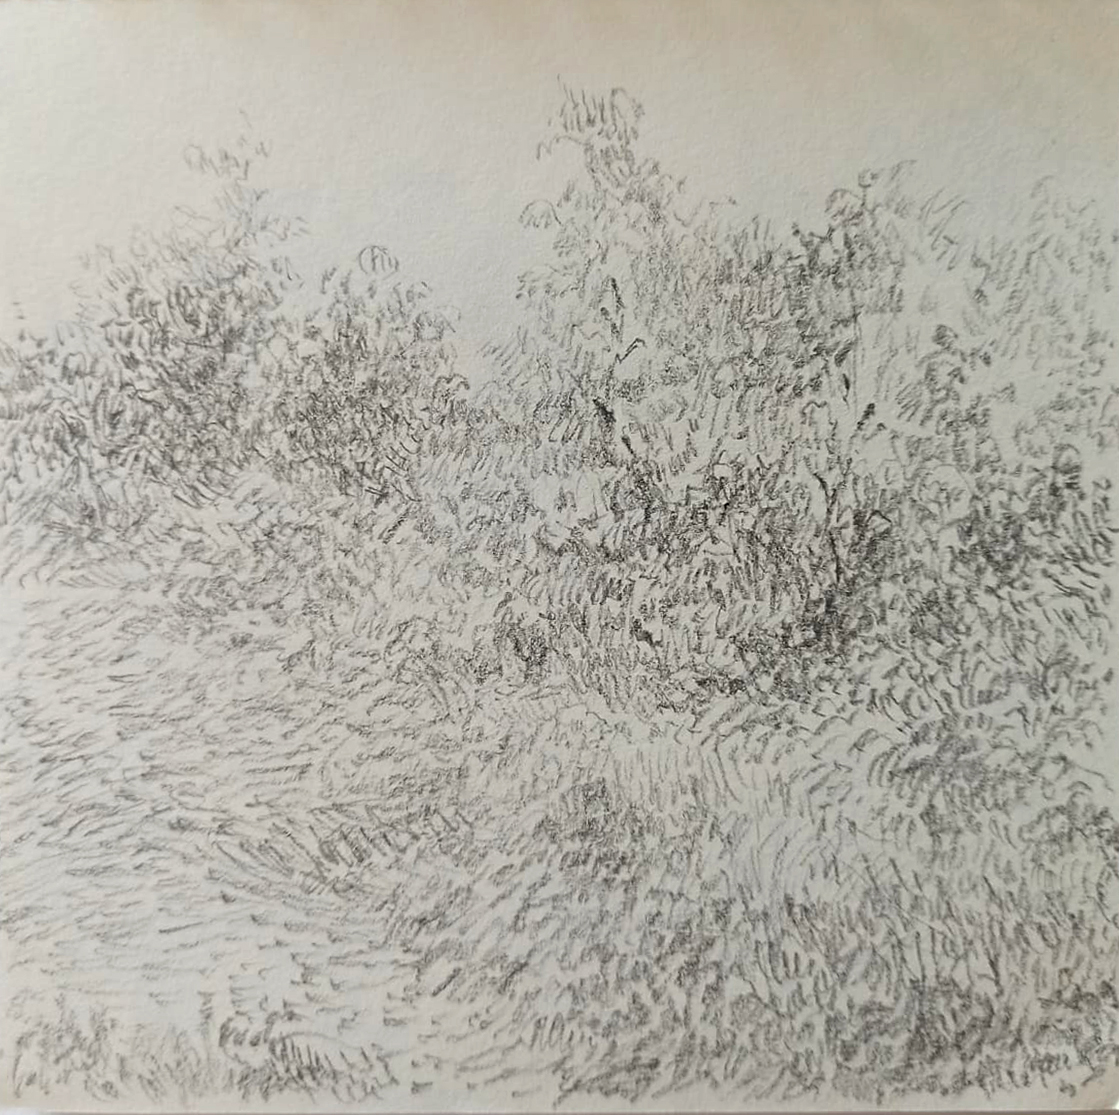 Colectiv Andrea Nagy Landscape 6 pencil on paper 15 x 15 cm